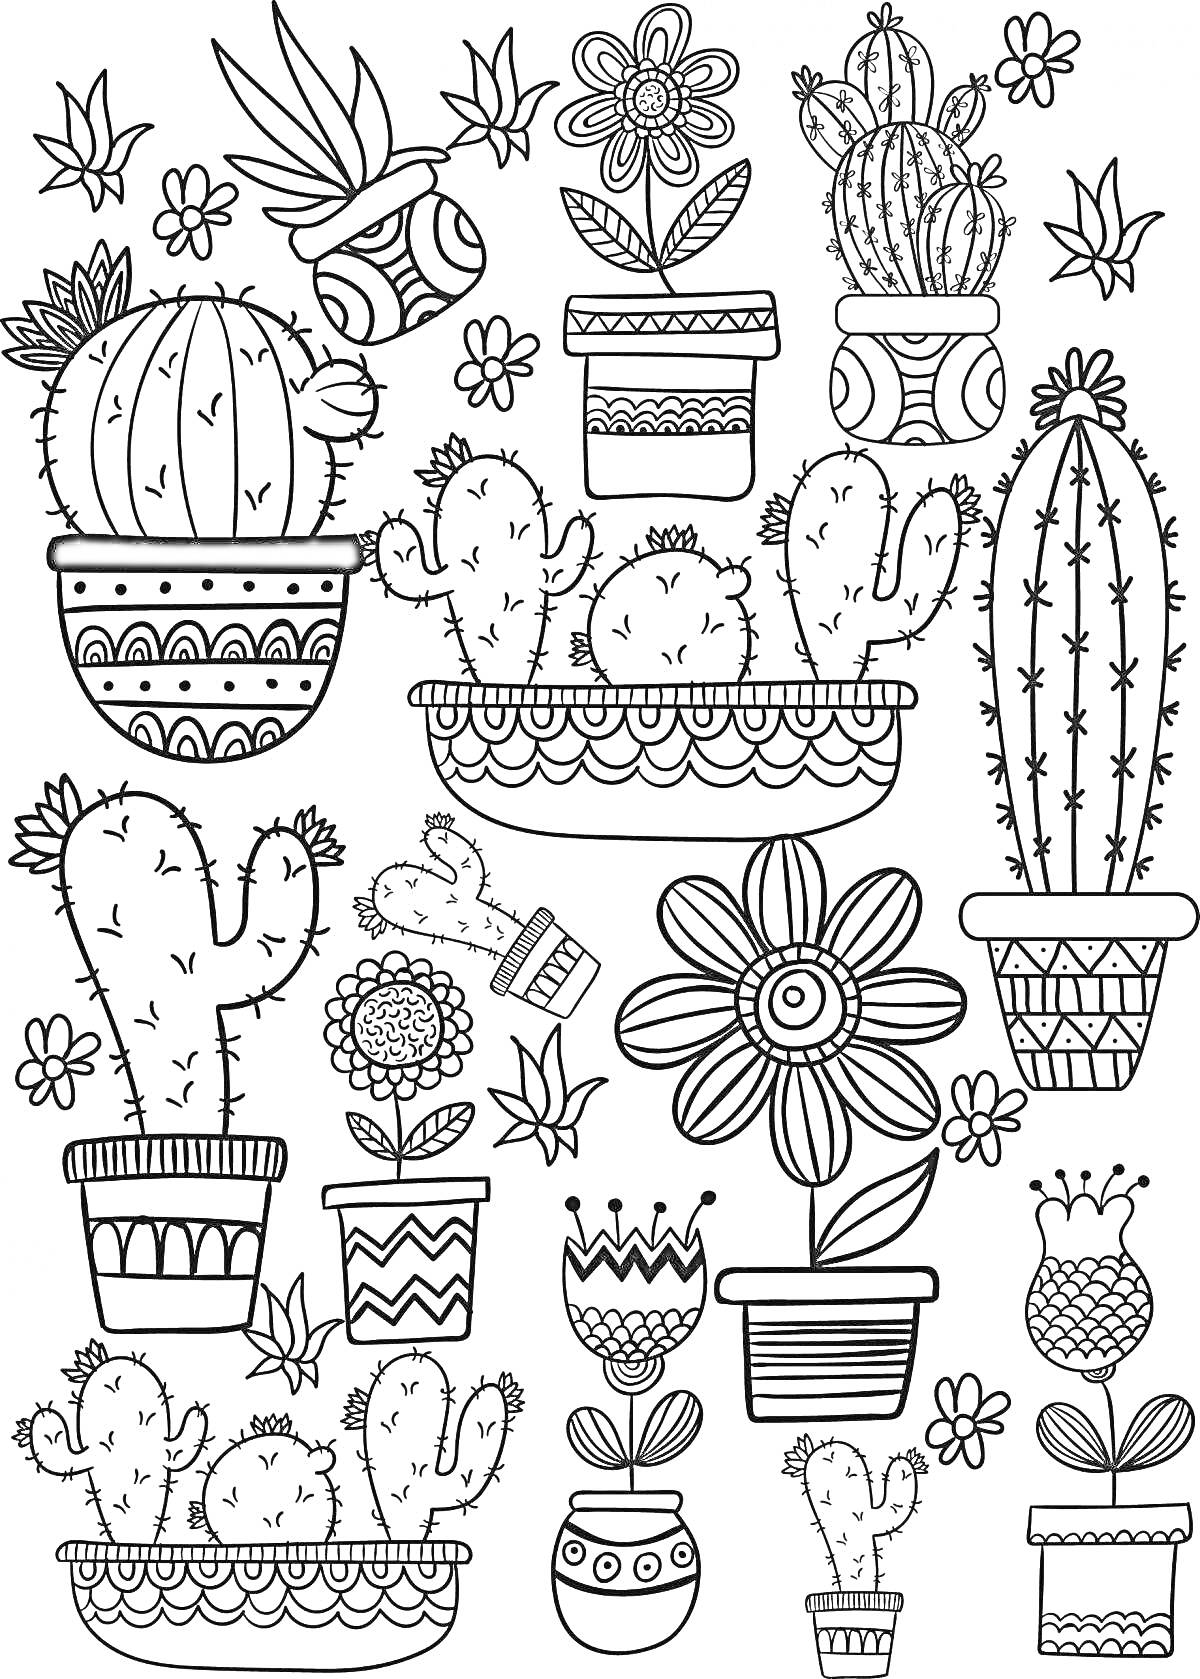 Раскраска Рисунок с кактусами и цветами в горшках